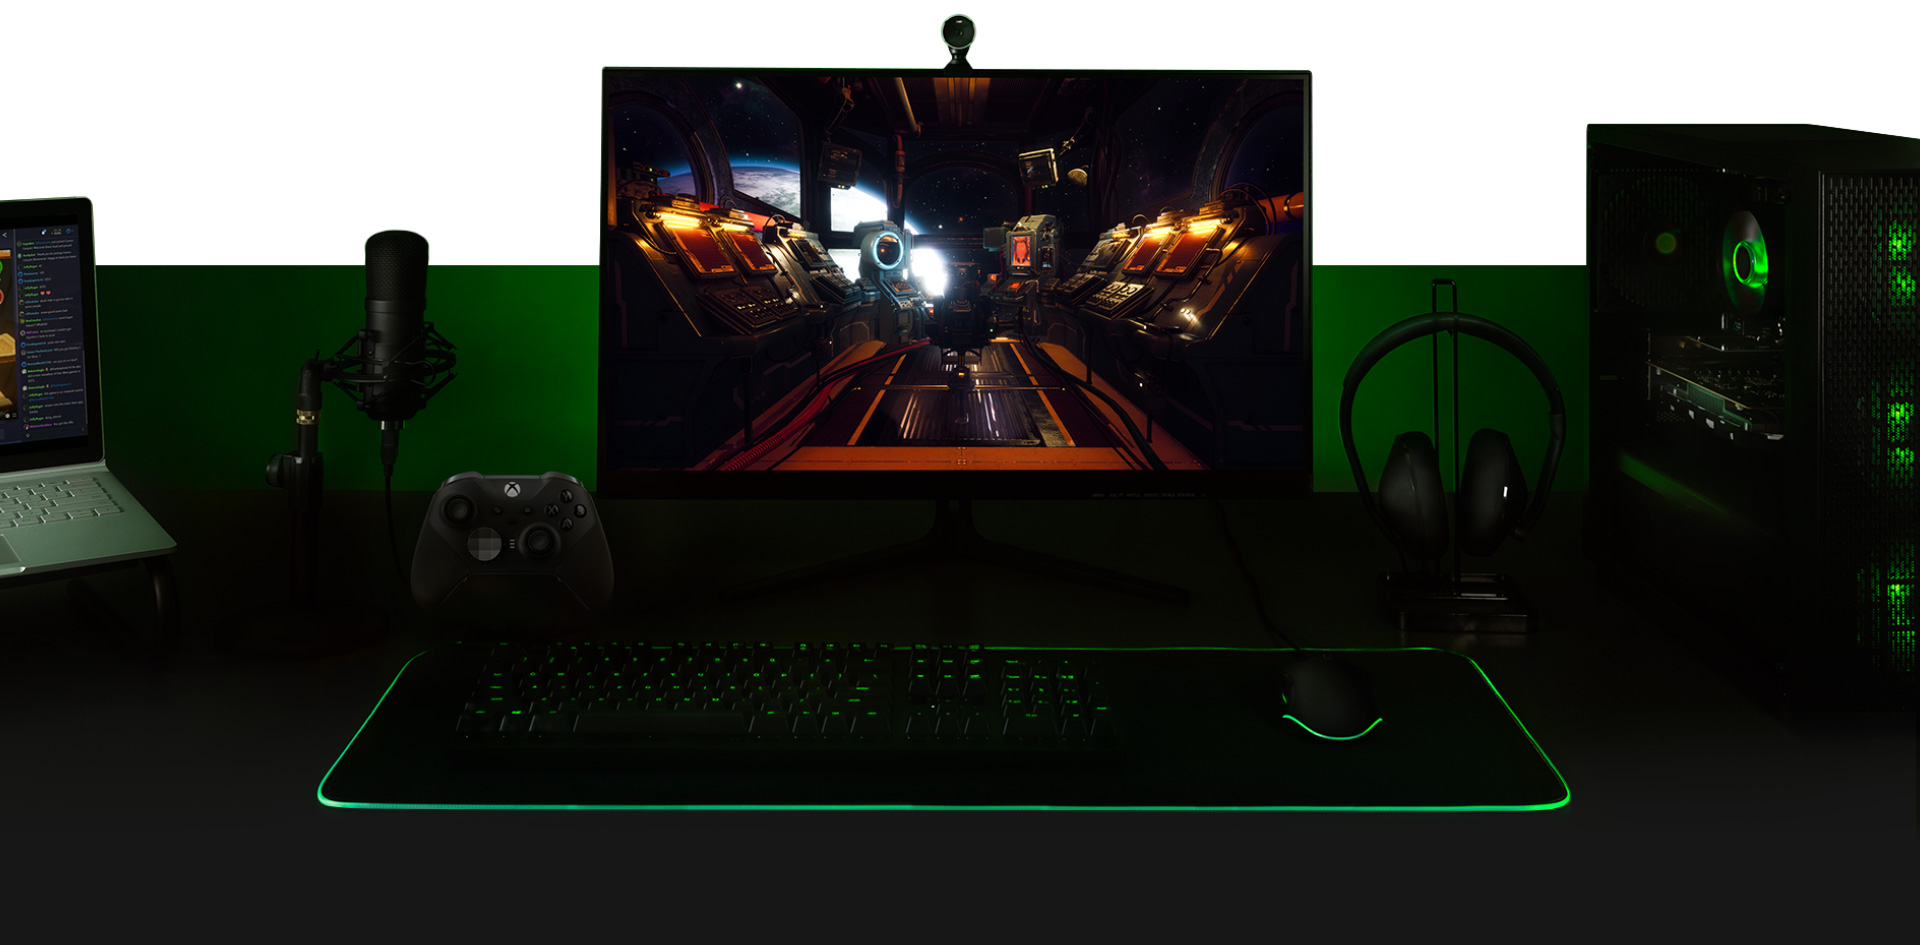 PC와 The Outer Worlds 게임 화면이 표시된 모니터, 키보드, Xbox One 컨트롤러, 마이크, 노트북으로 함께 설정된 데스크톱.